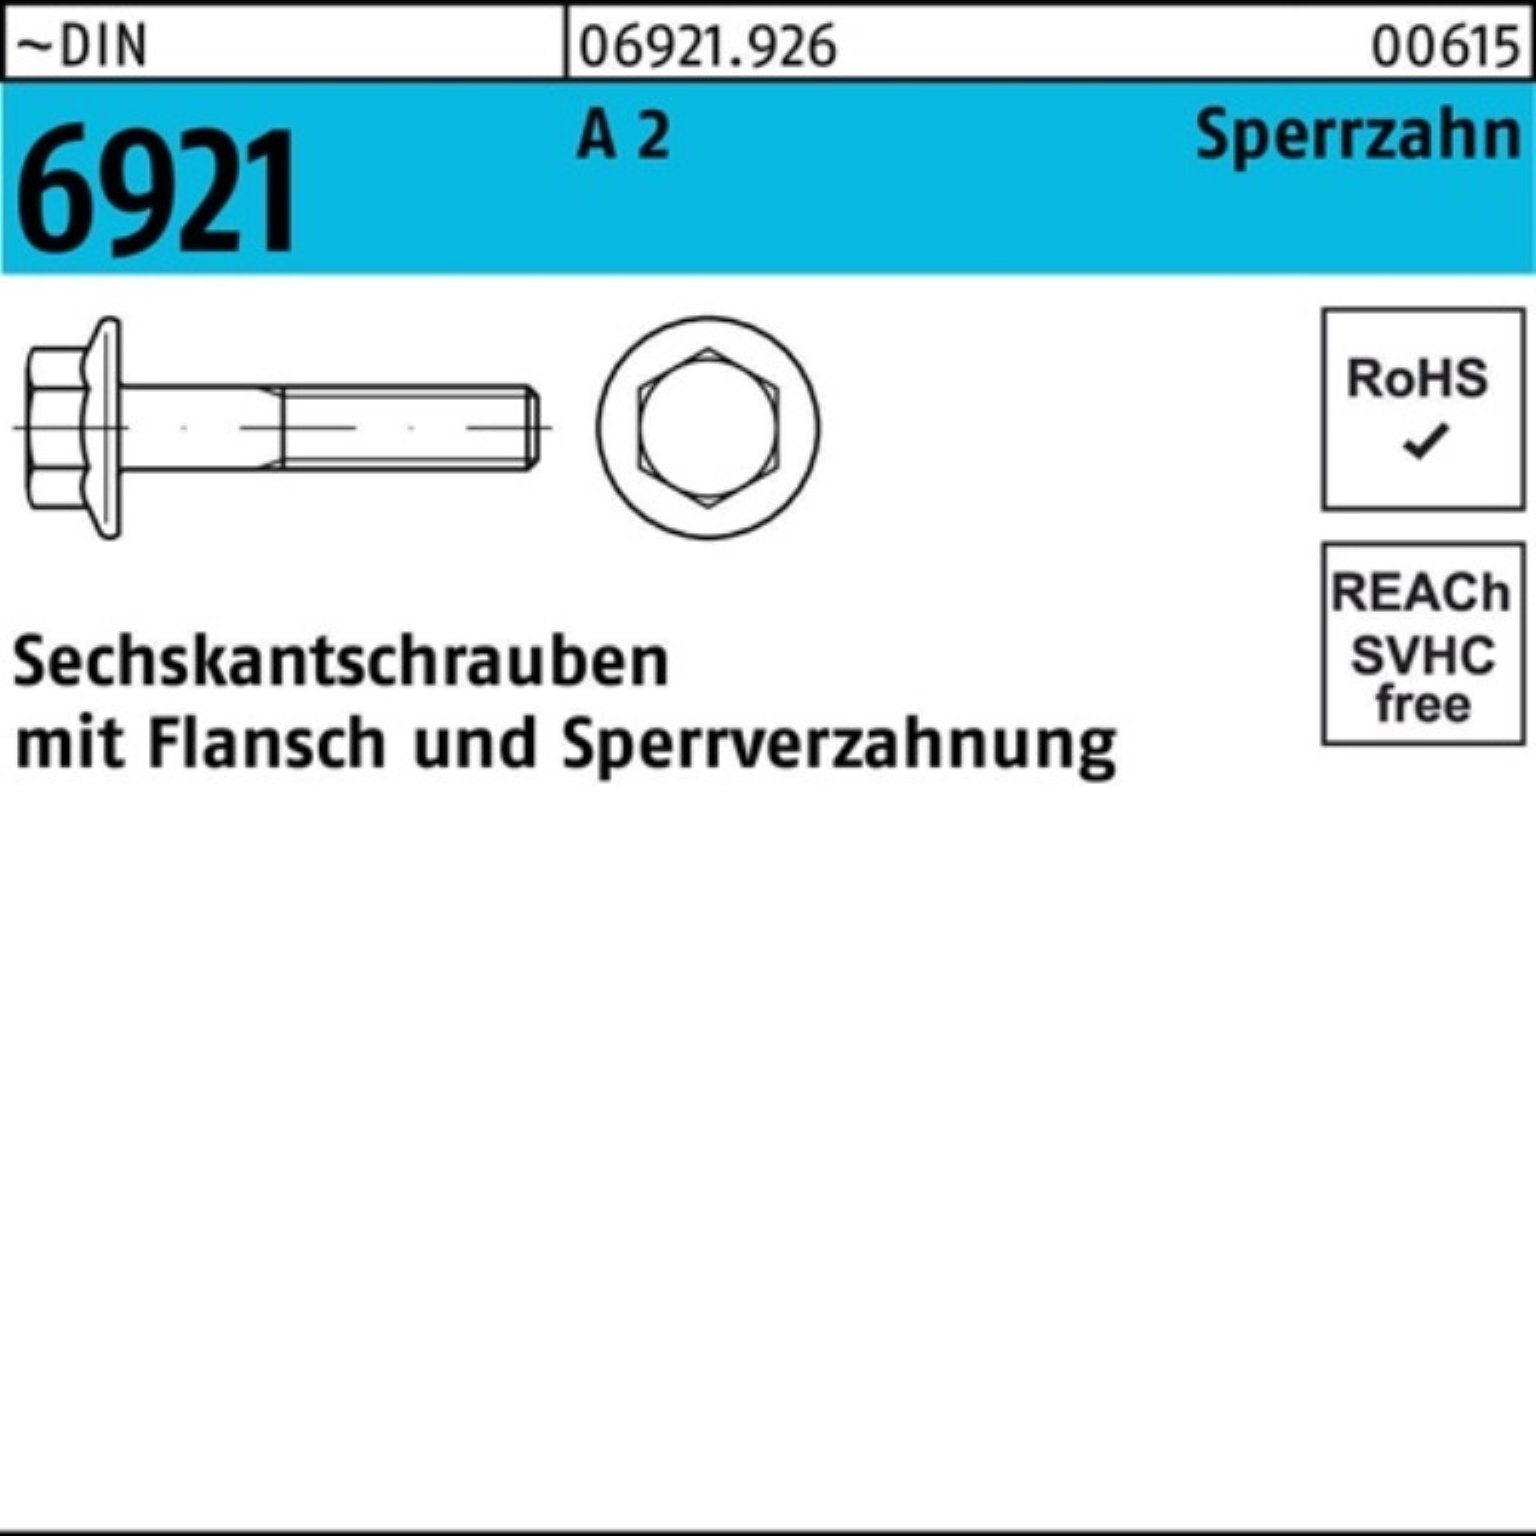 M5x Sechskantschraube Flansch 2 Pack 200er Reyher Sperrzahnung Sechskantschraube DIN A 12 6921